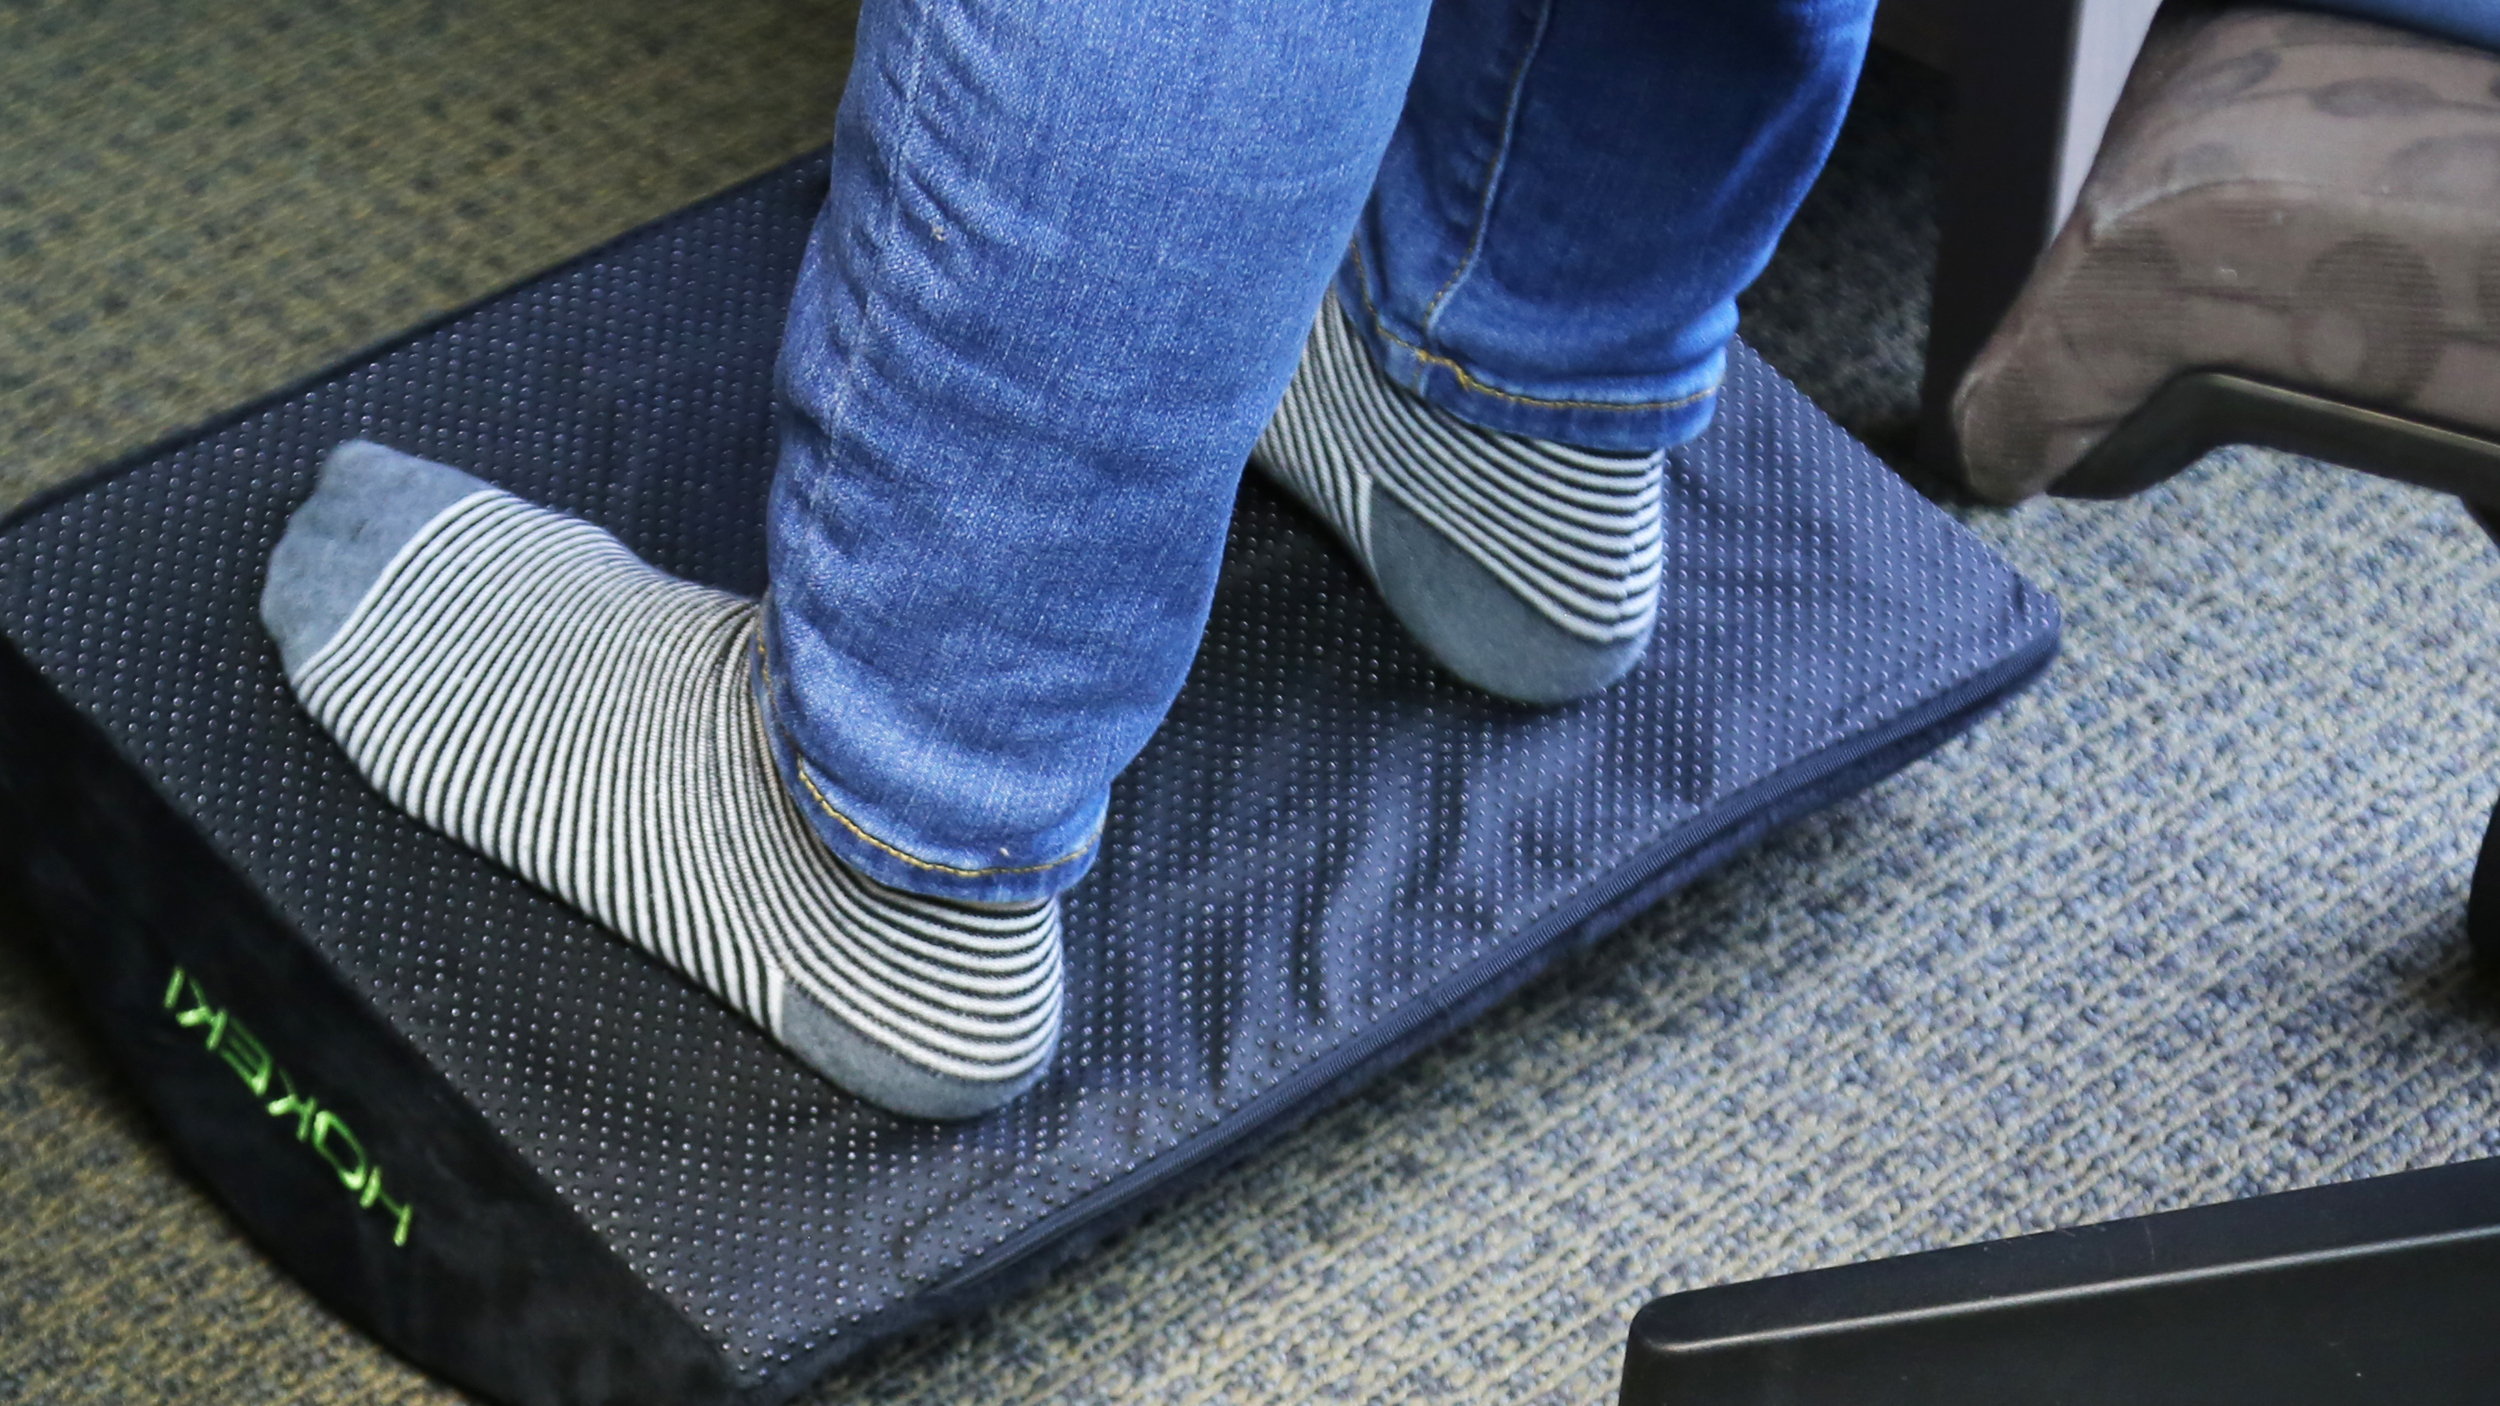 HOKEKI Foam Non-Slip Surface Under Desk Footrest Pillow